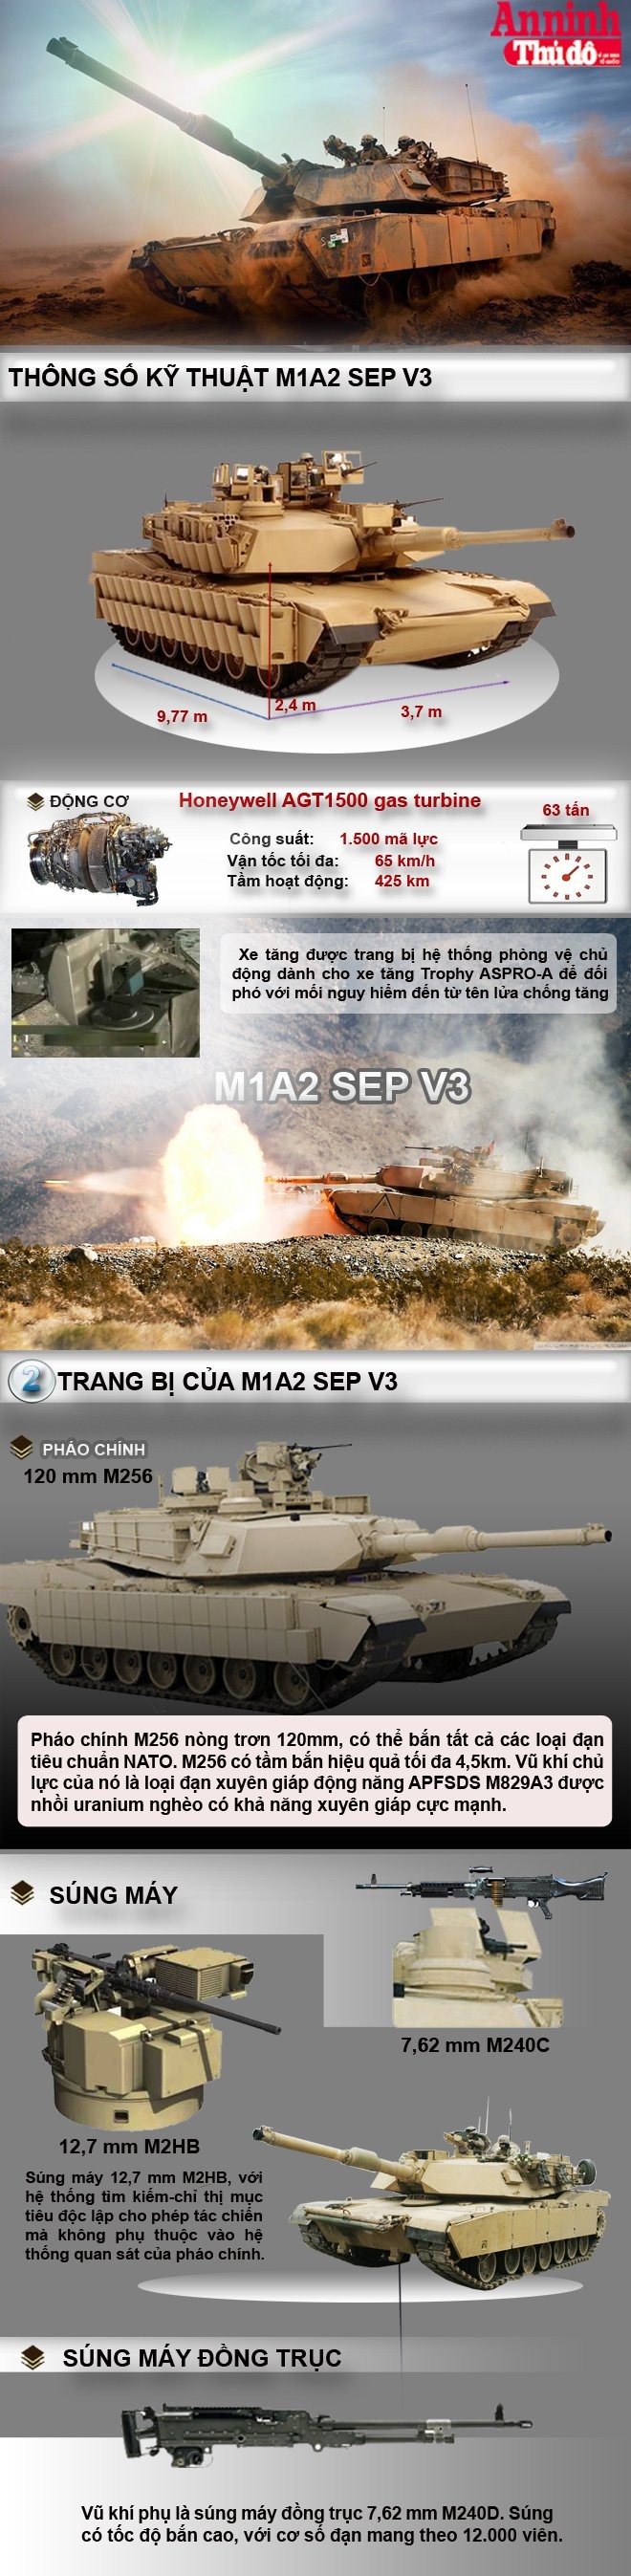 [Infographic] M1A2 SEP V3 - "Hổ lửa" mọc thêm cánh ảnh 2